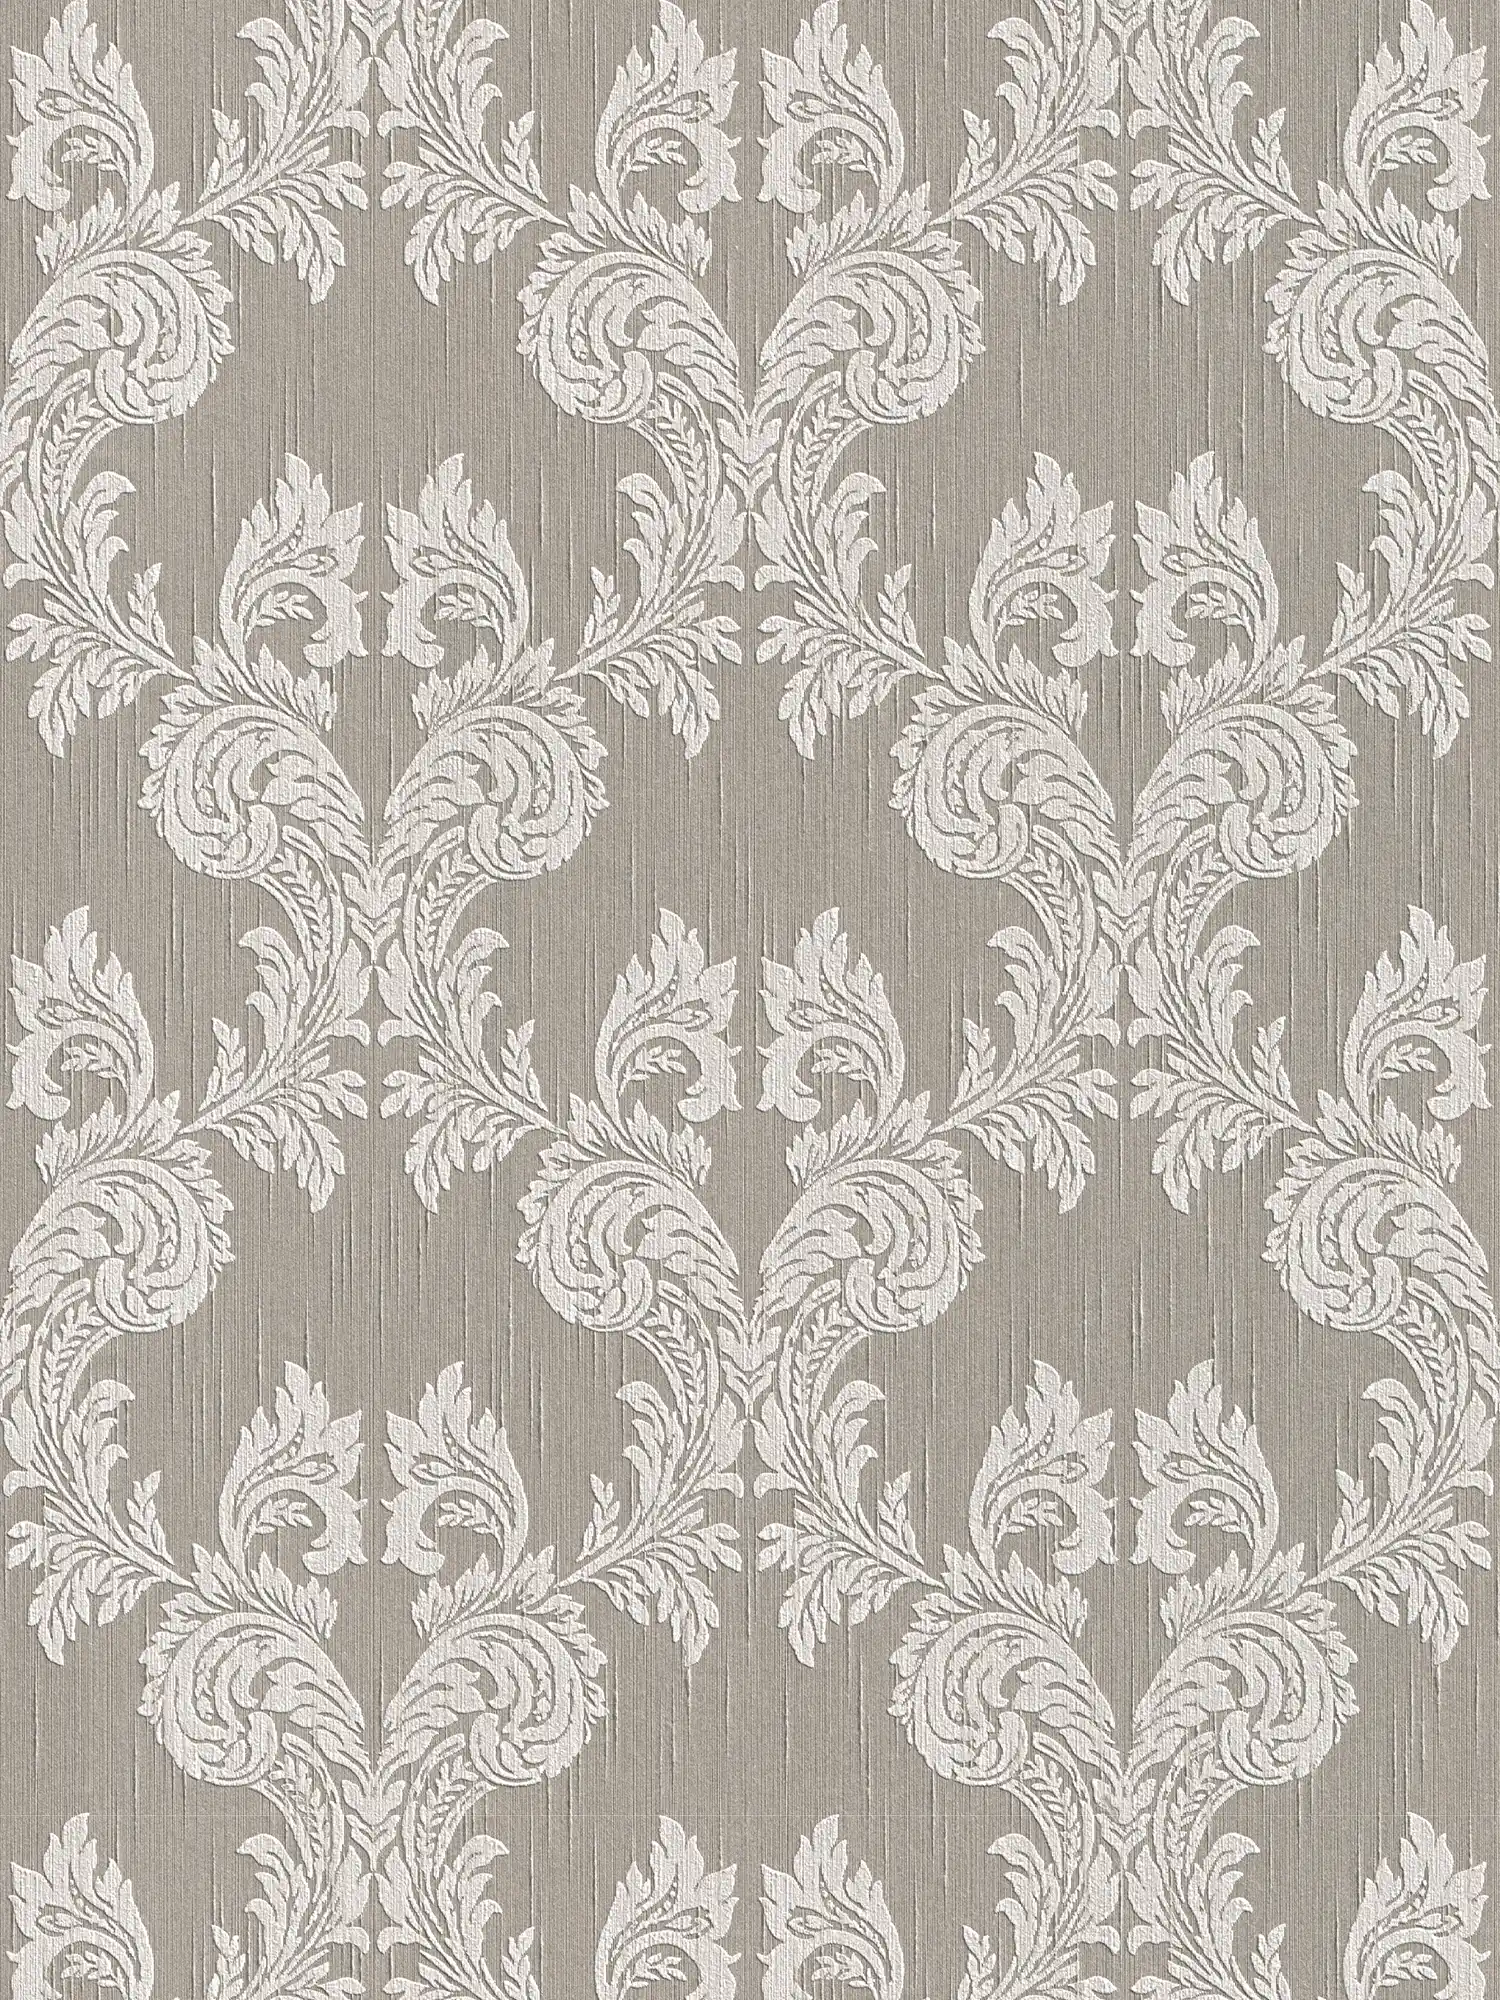 Wallpaper baroque ornaments & textile design - beige, grey
